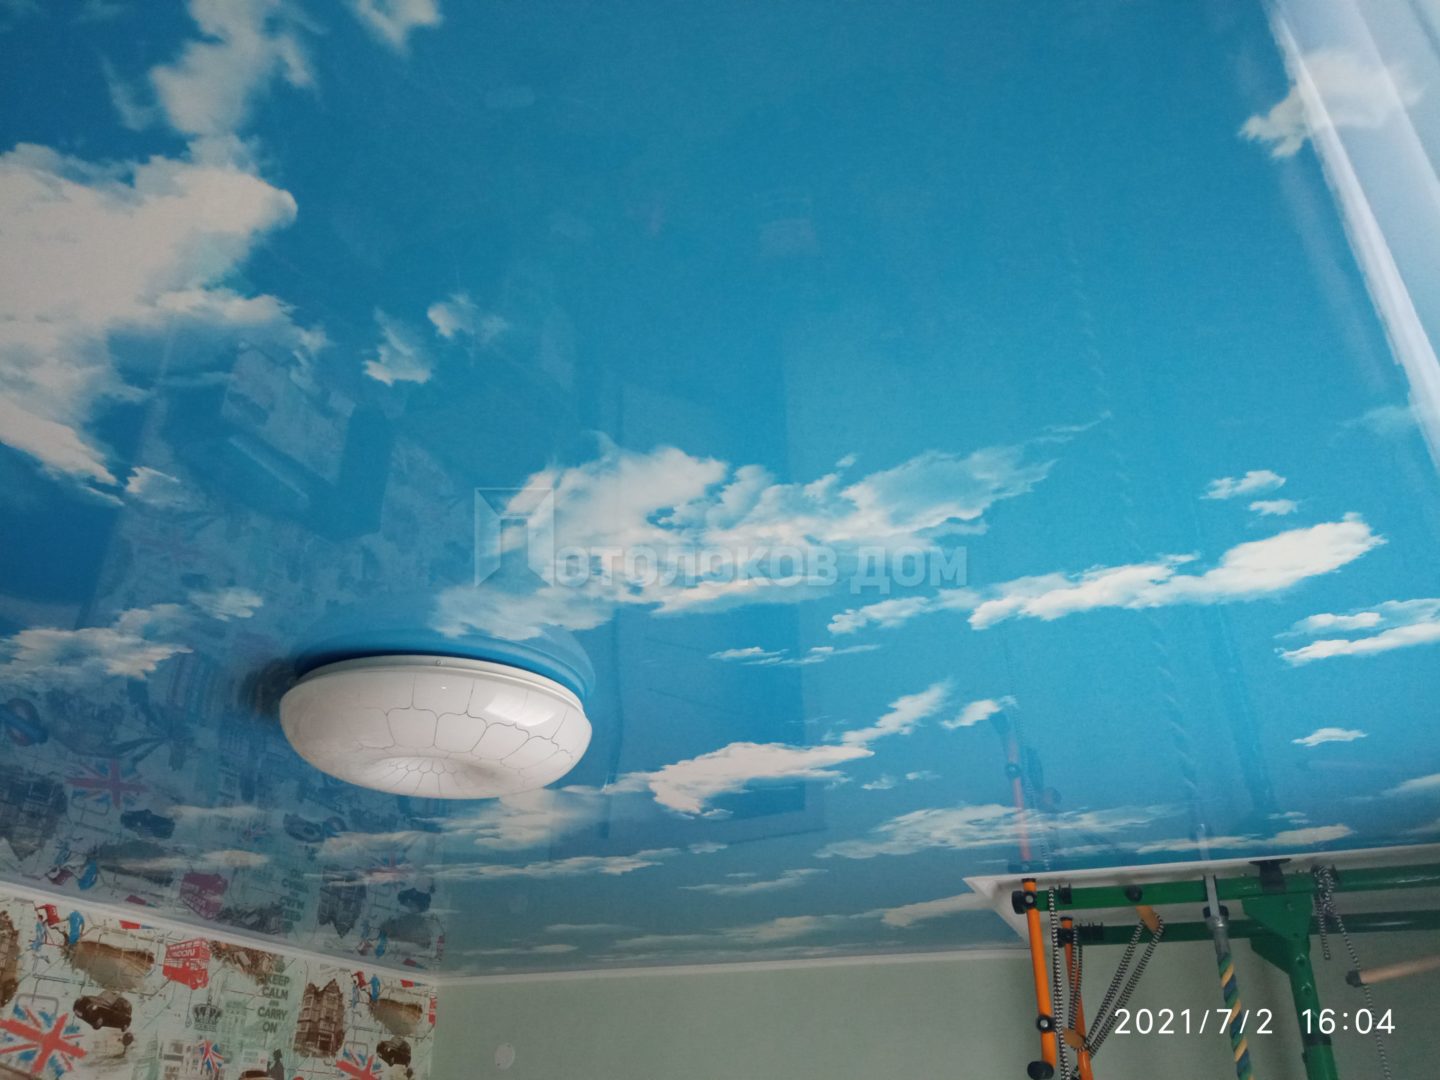 Красота в доме. Как сделать облака на потолке своими руками?